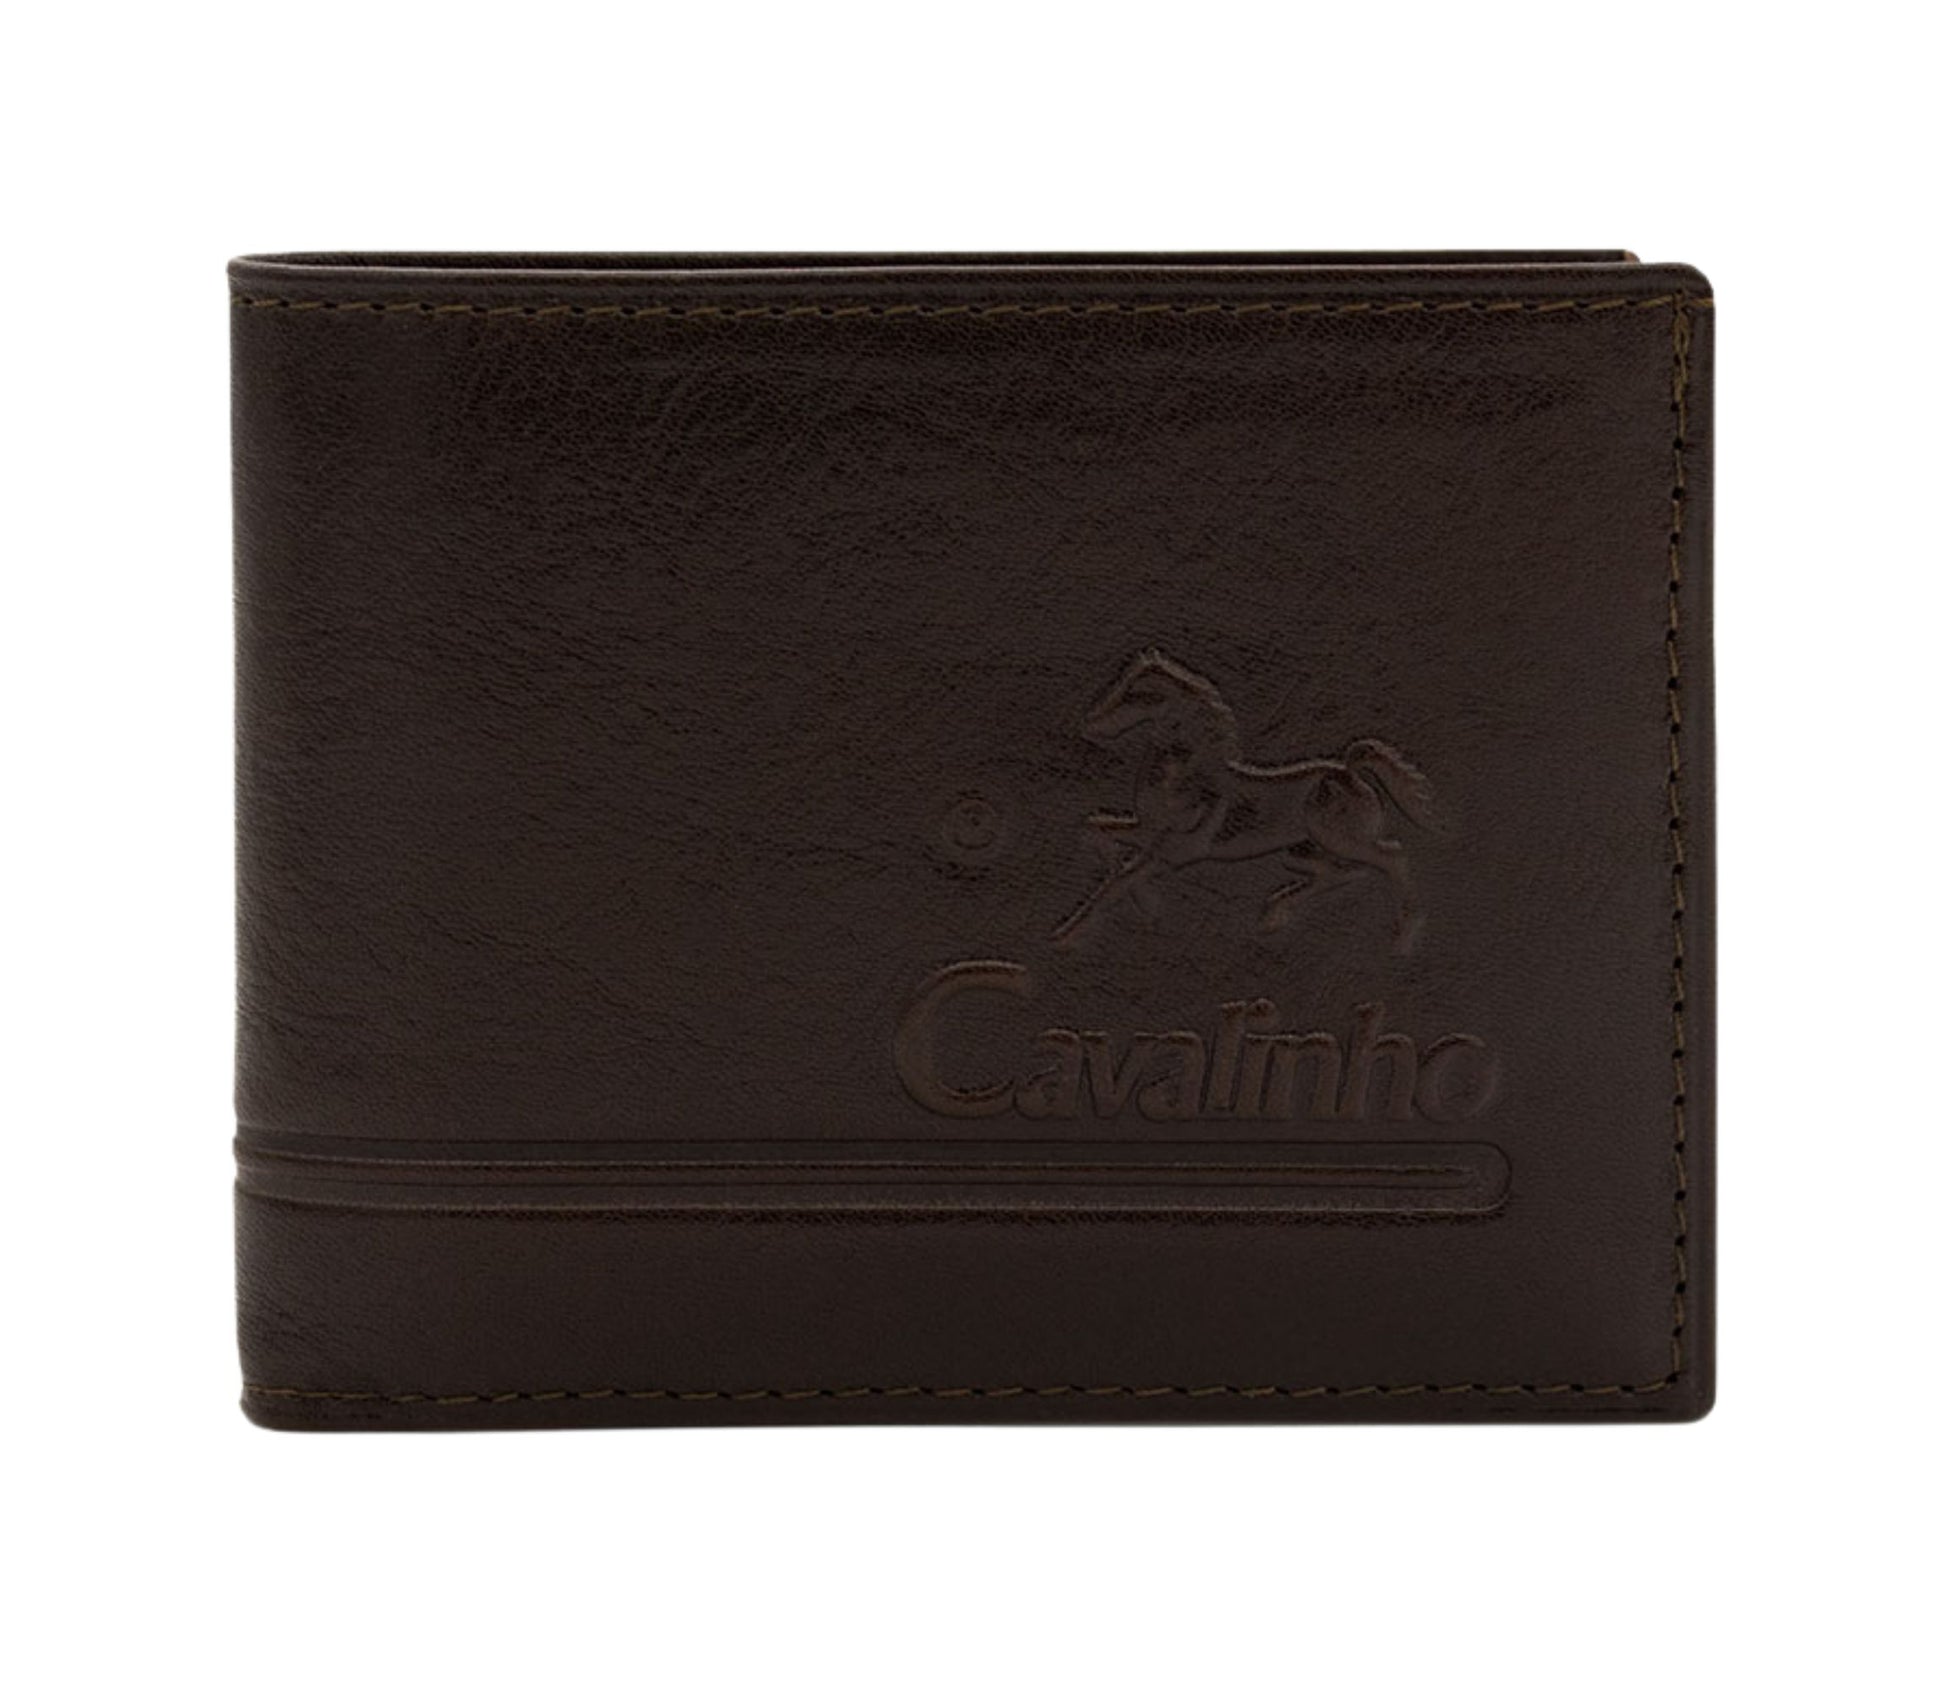 #color_ Brown | Cavalinho Men's 2 in 1 Bifold Leather Wallet - Brown - 28610528.02_1